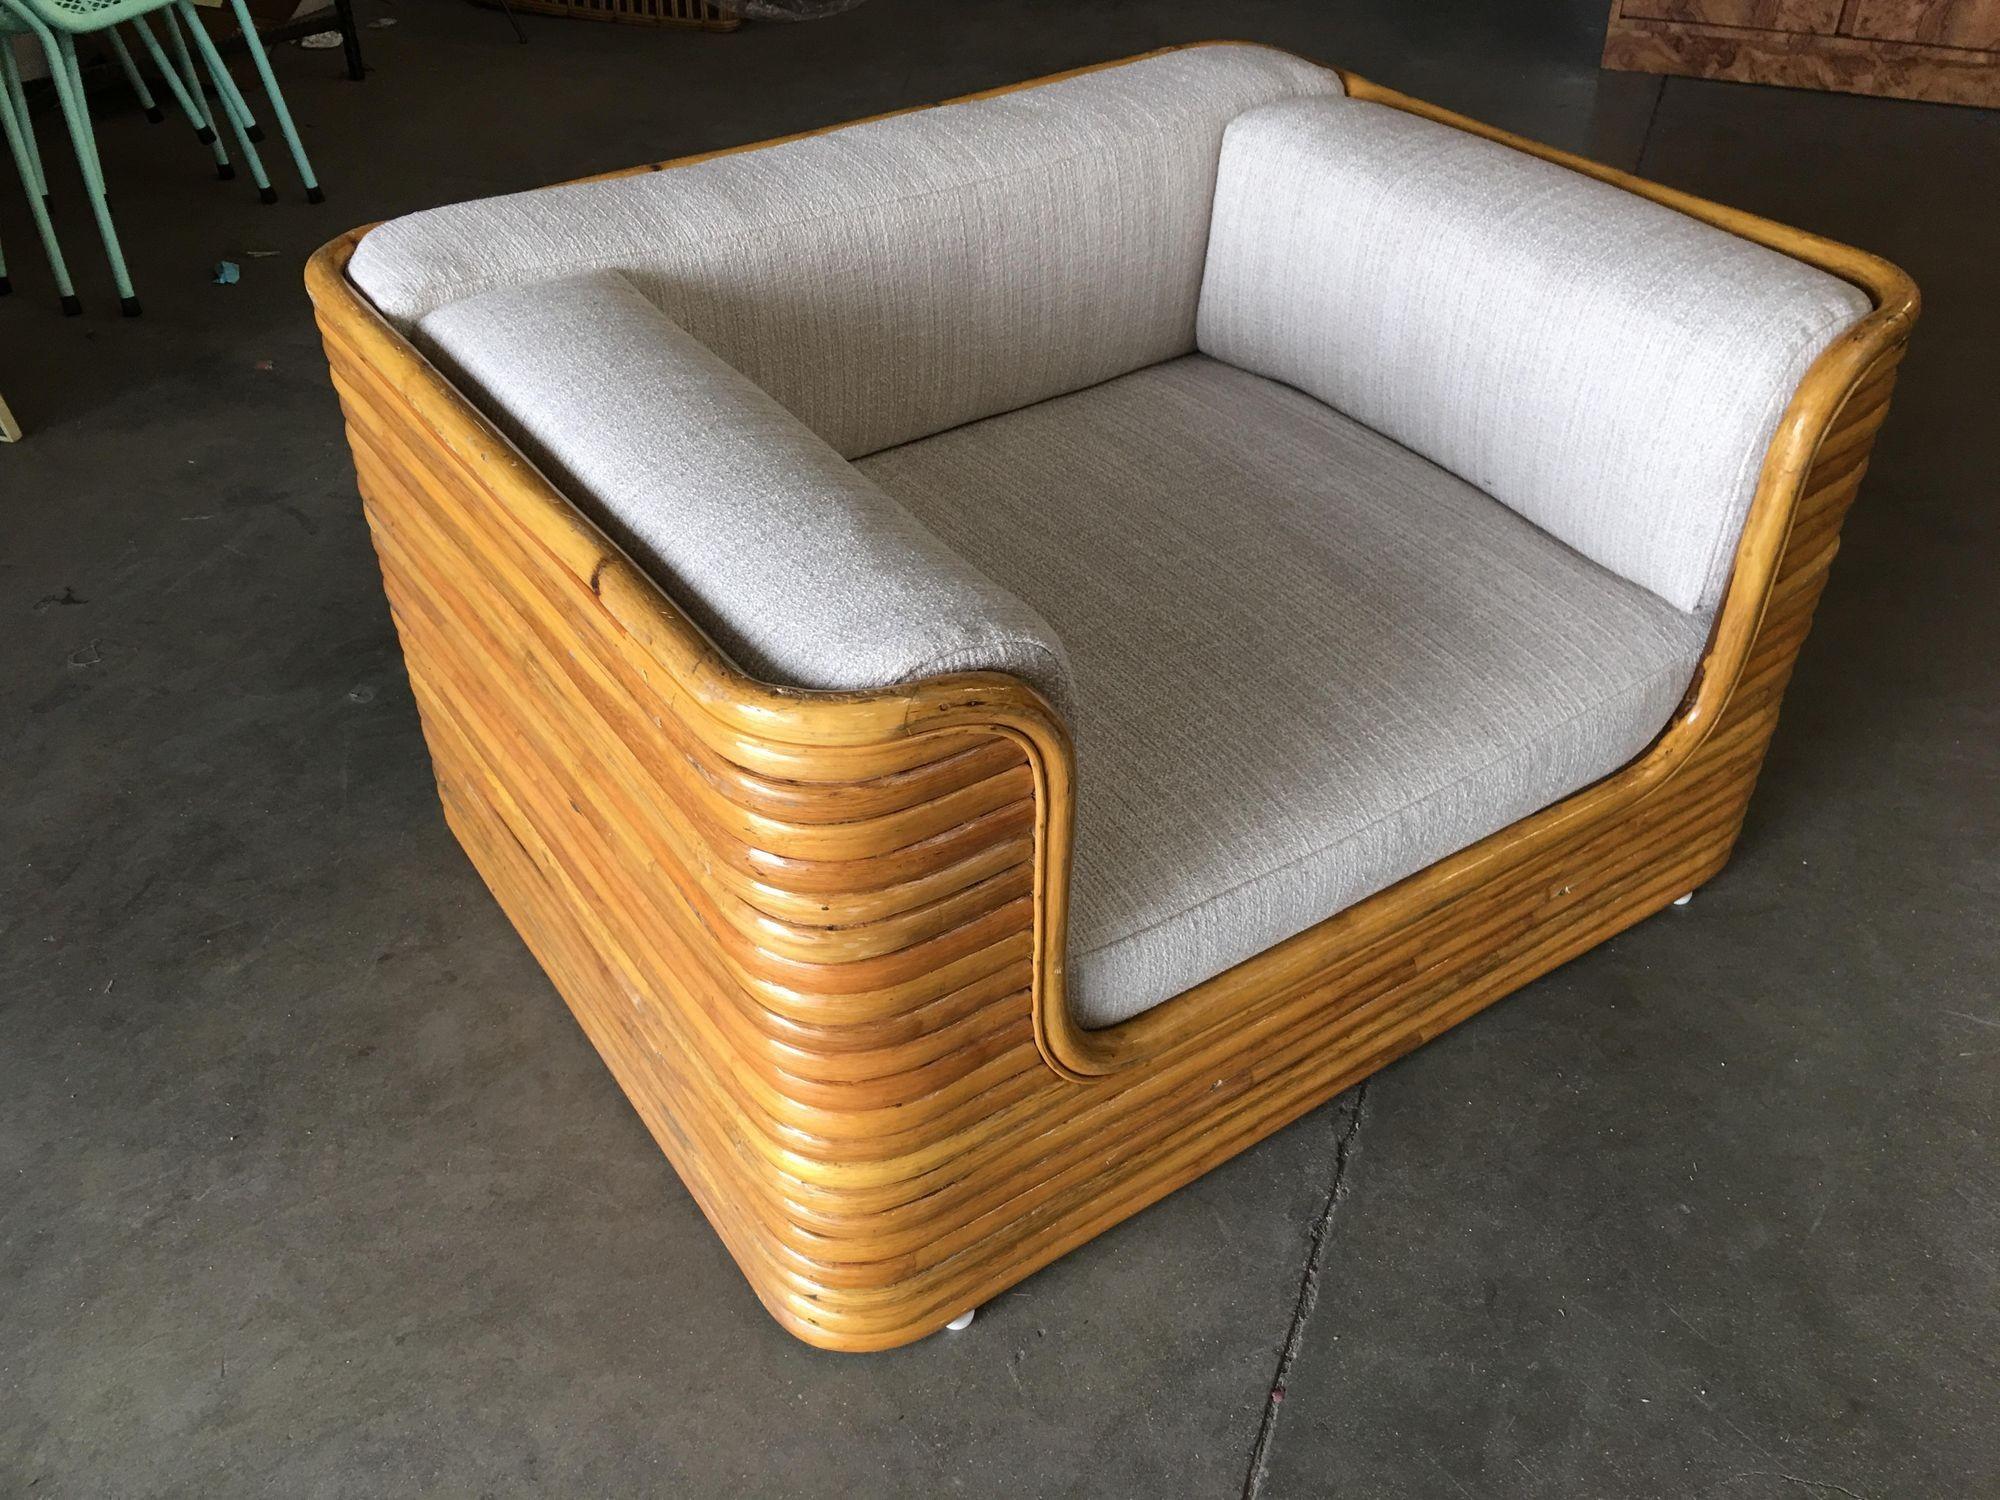 Rare chaise basse en rotin empilé vintage des années 1970, au design cubiste, faite entièrement de rotin empilé et plié à la vapeur, avec du rotin le long des bords.

La chaise a une hauteur basse de 12 pouces et une assise en mousse souple à double